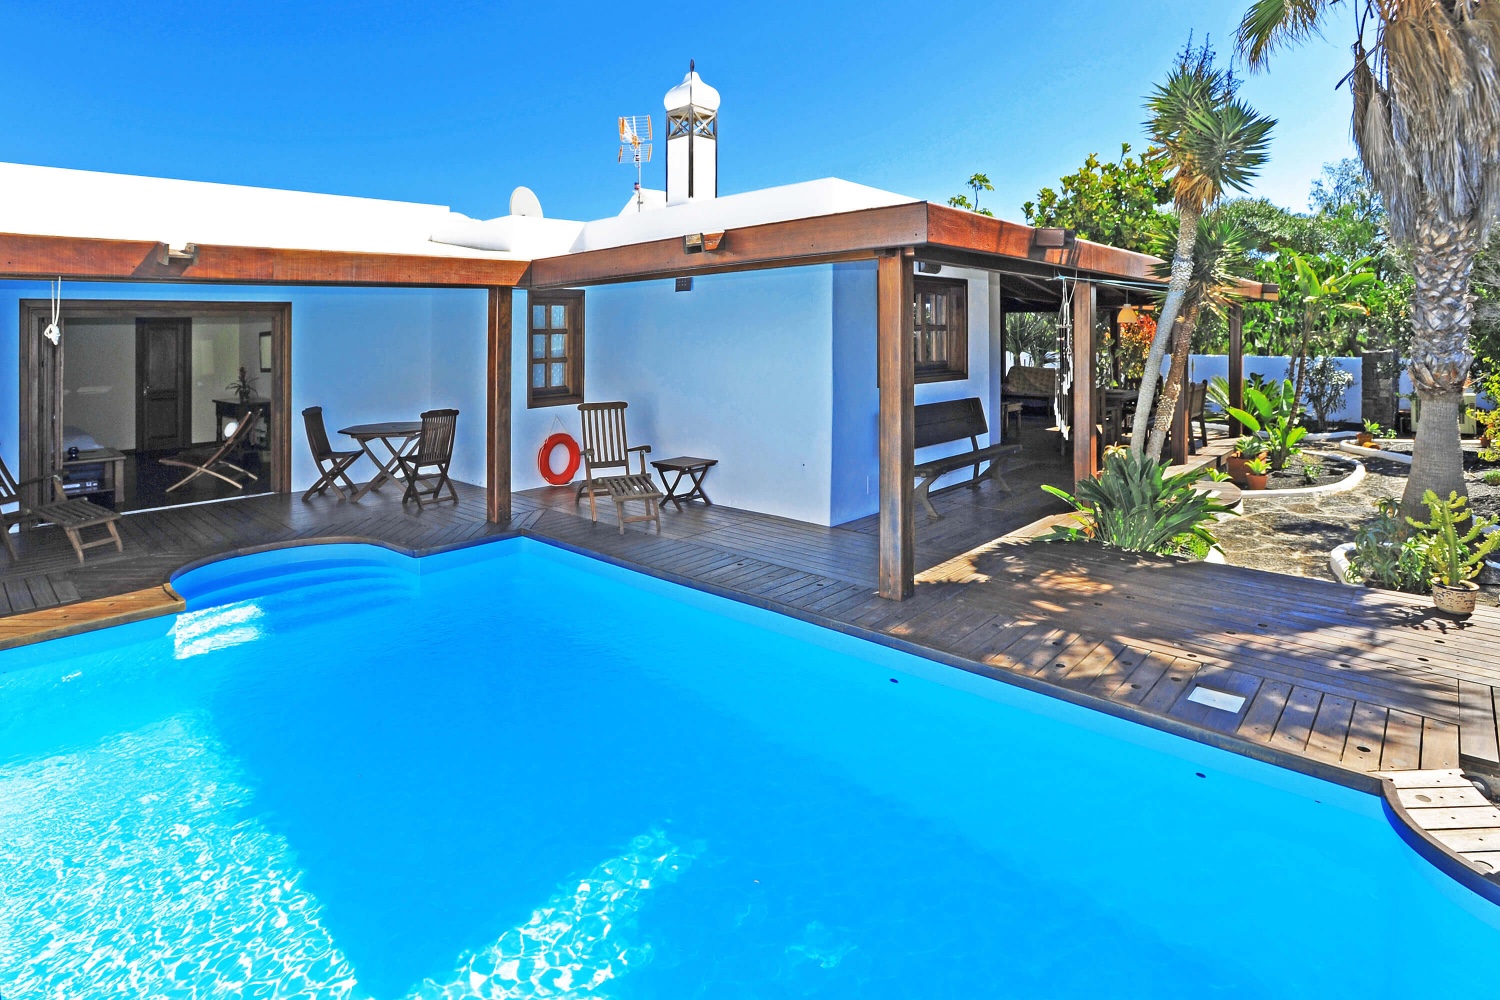 Piękny dom w stylu rustykalnym na wakacje na Lanzarote, z pięknym ogrodem i prywatnym basenem w pobliżu plaży i pola golfowego w Costa Teguise